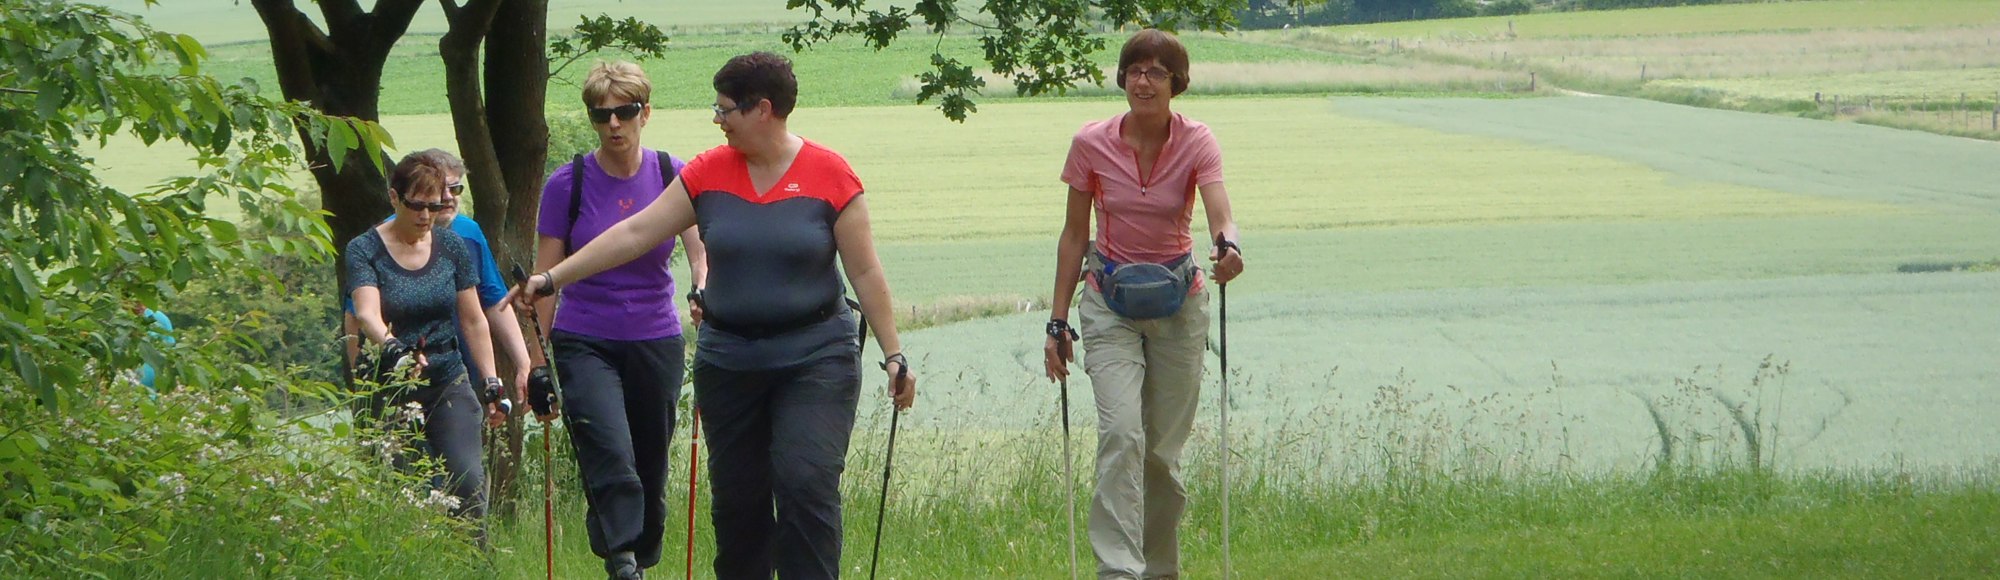 een groep vrouwen loopt door een grasveld een heuvel op